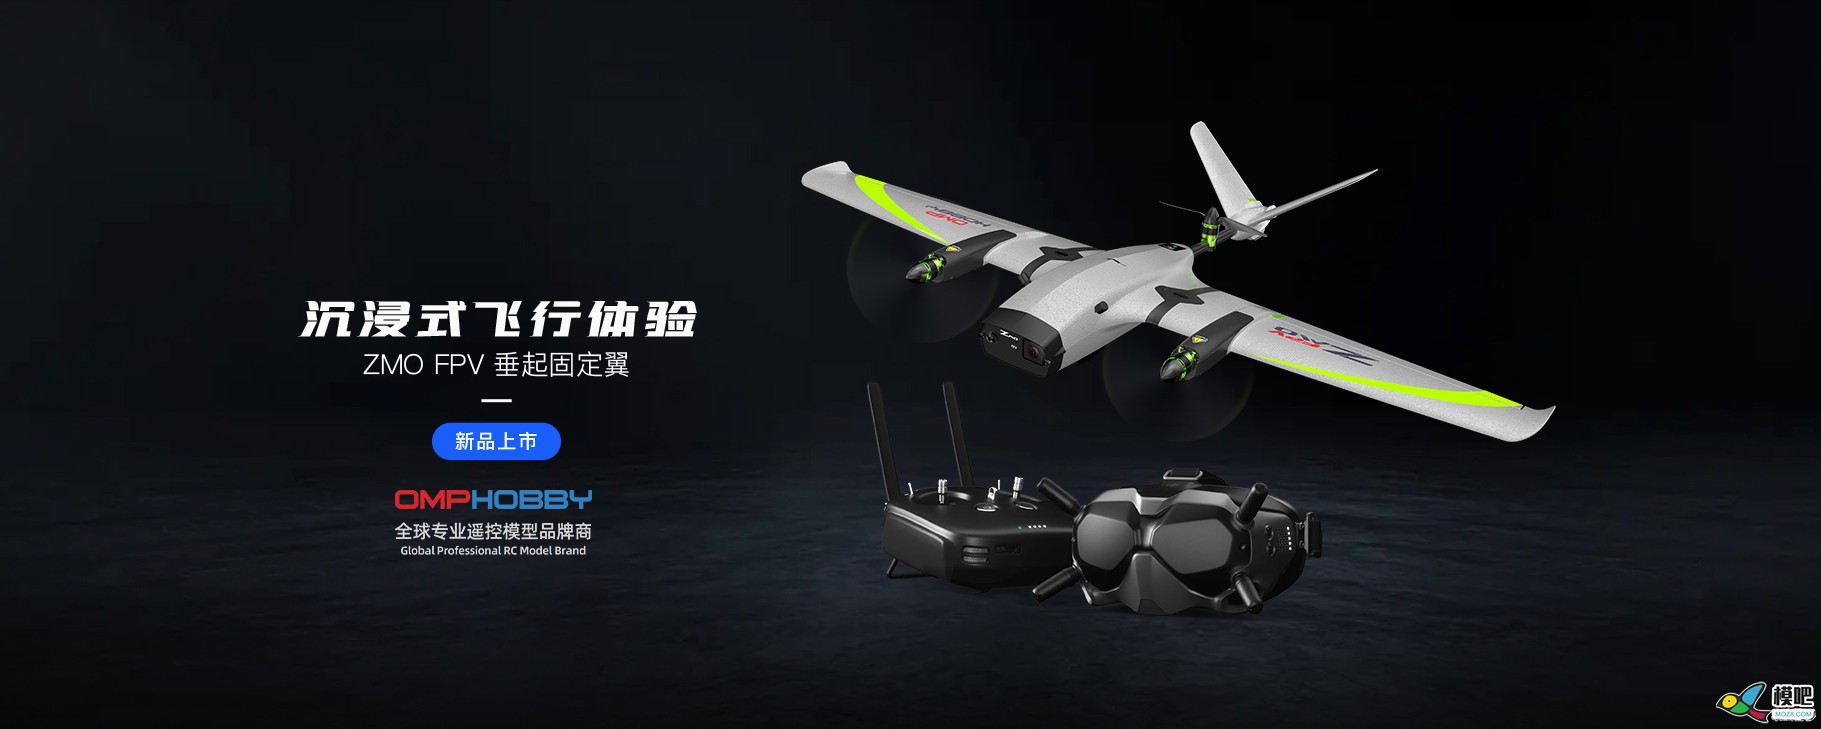 潮玩无人机-垂起固定翼FPV【ZMO】| 全新发售 无人机,航模,固定翼,飞手,飞行体验 作者:边锋领域 2066 